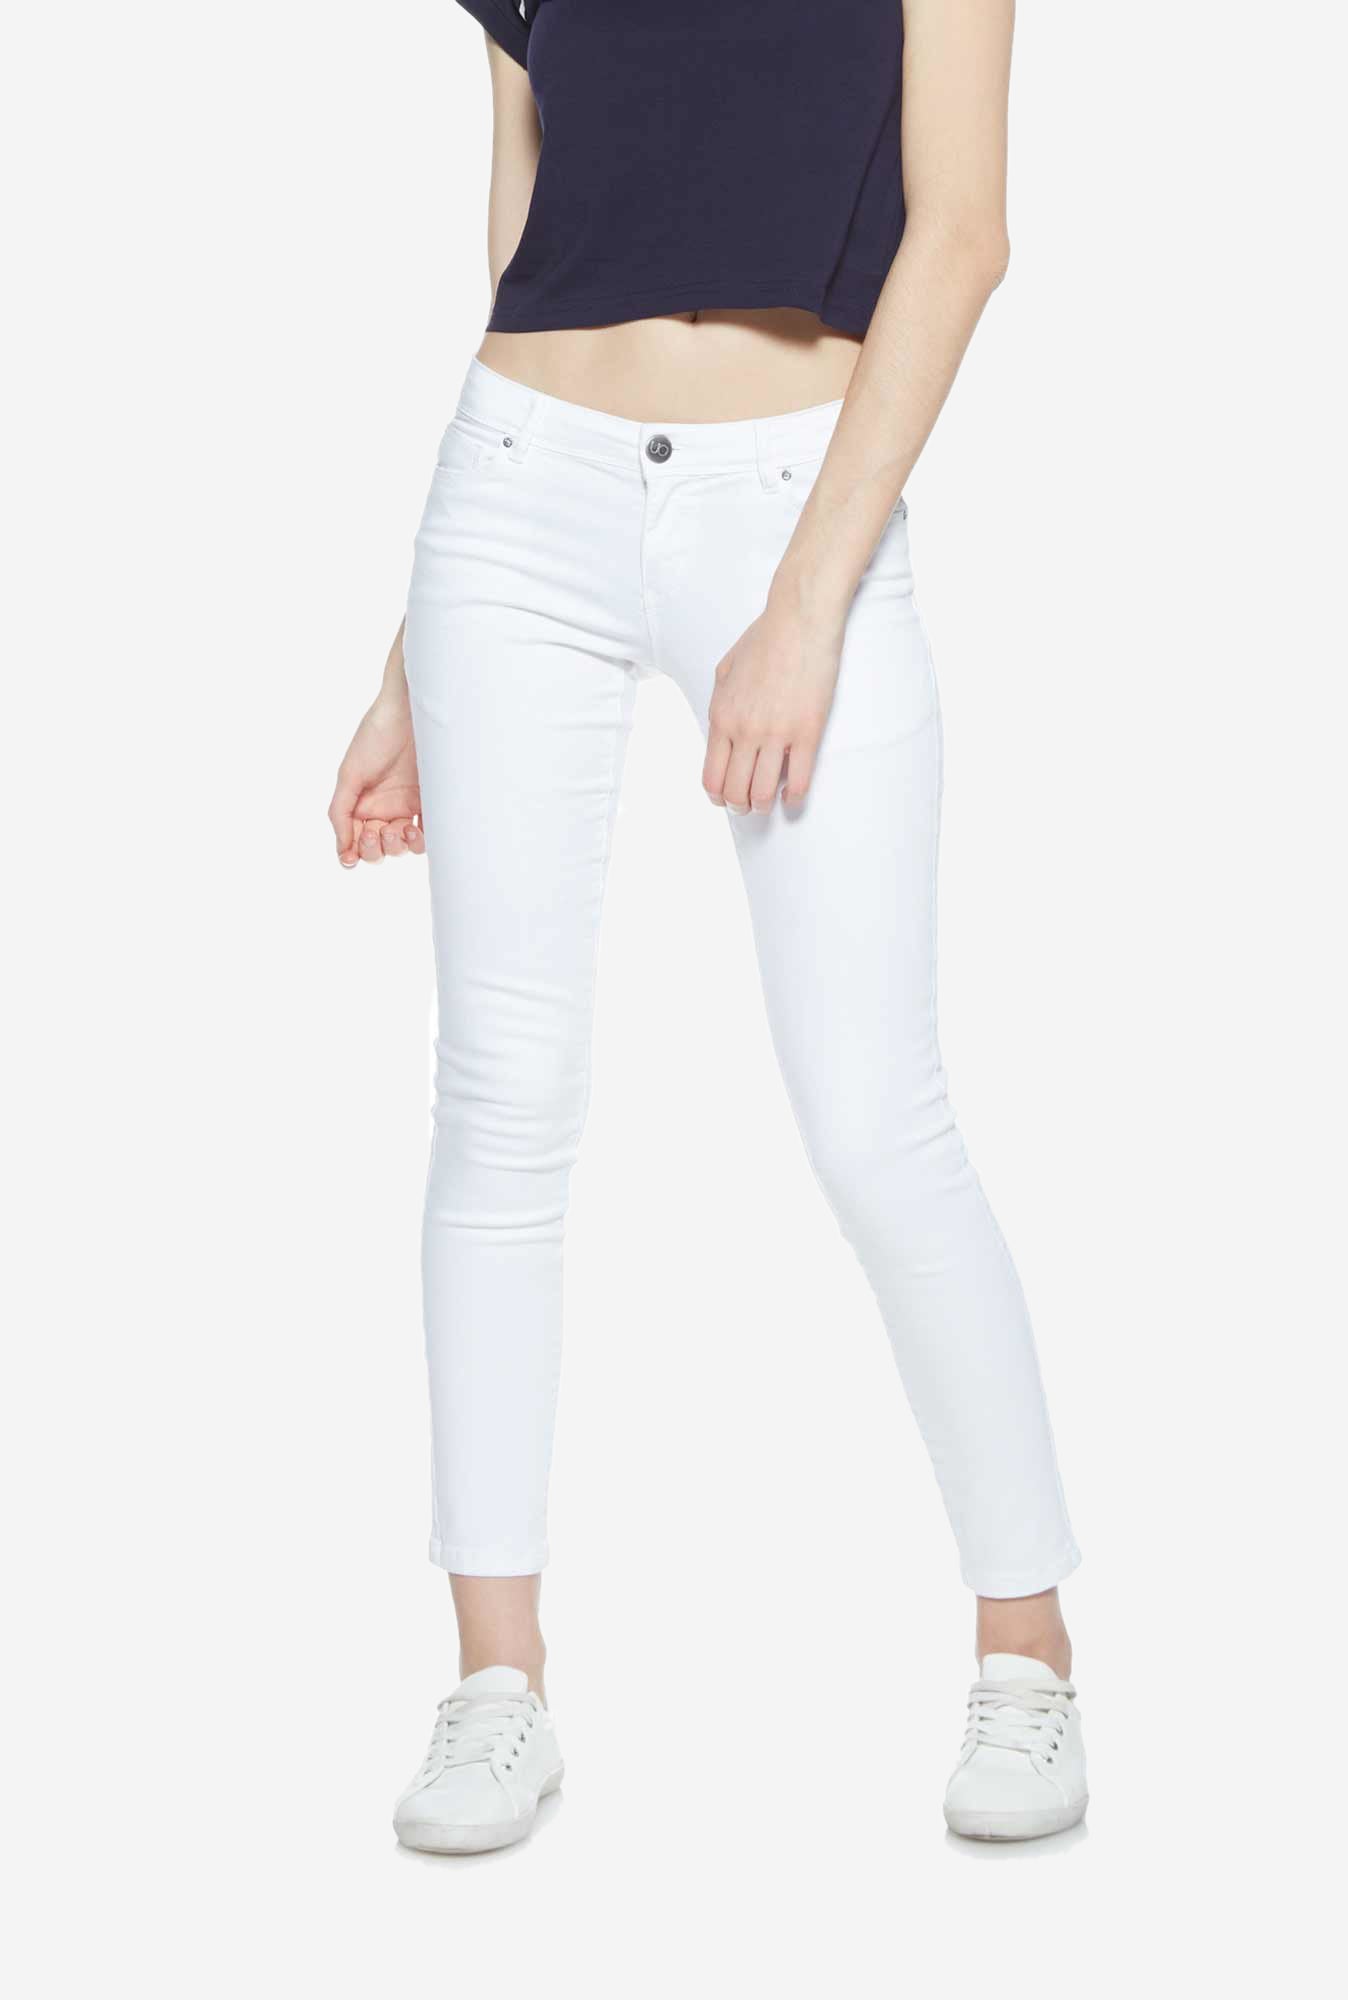 buy ladies jeans